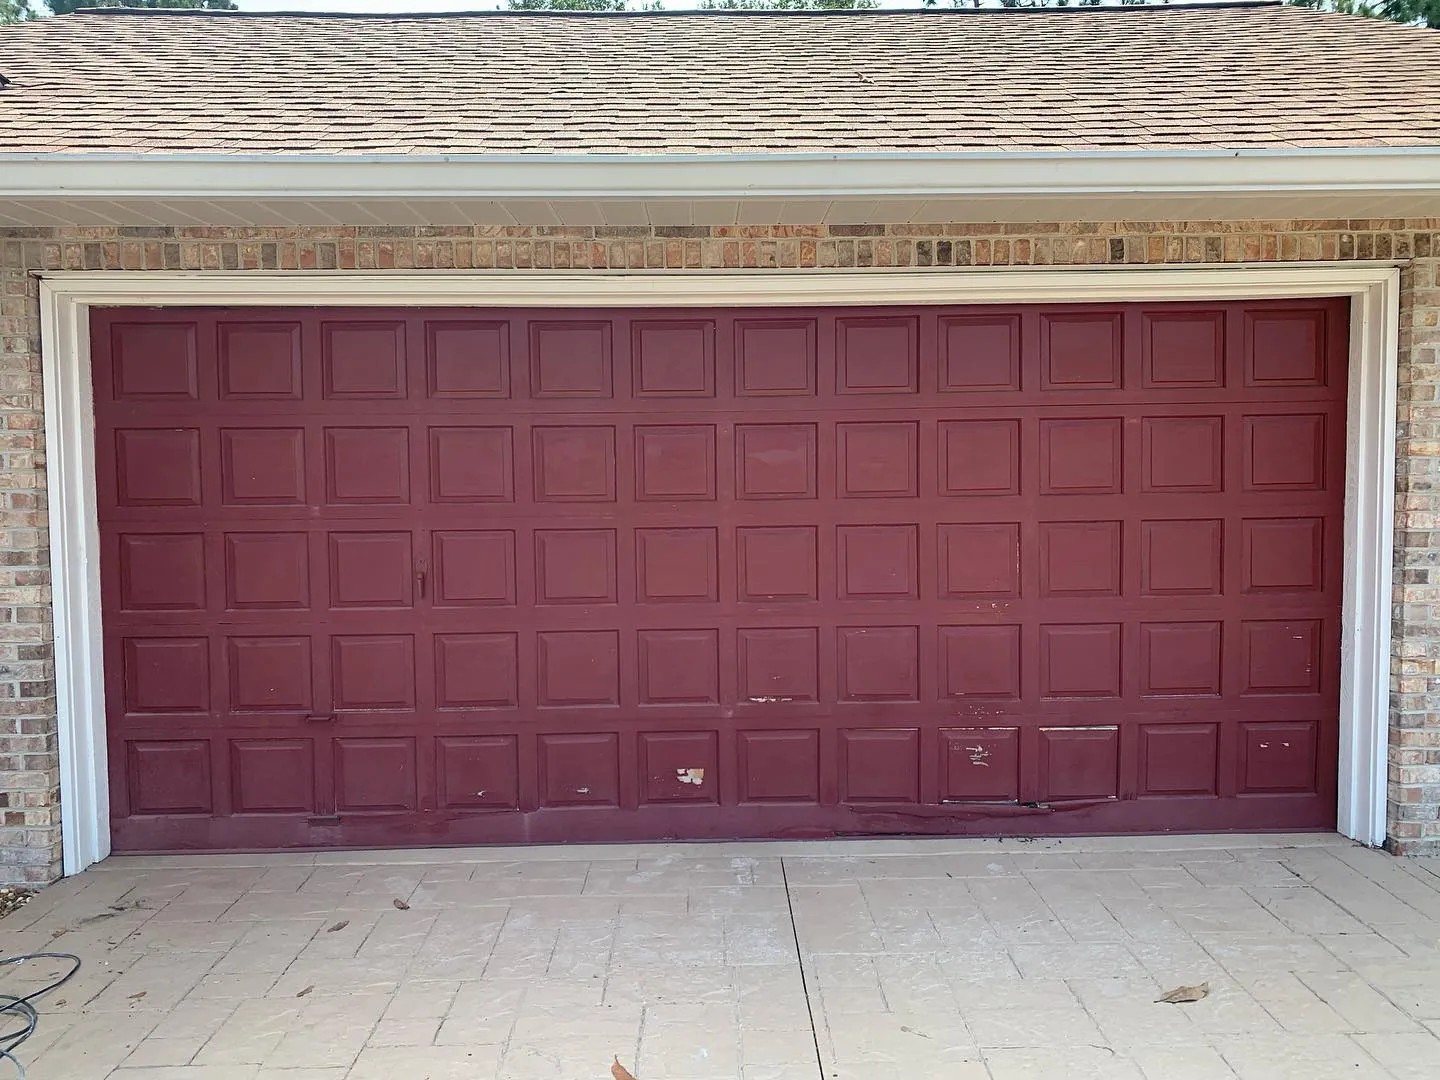 Garage Door and Opener Installation for Coastline Garage Door, LLC in Palm Coast, FL